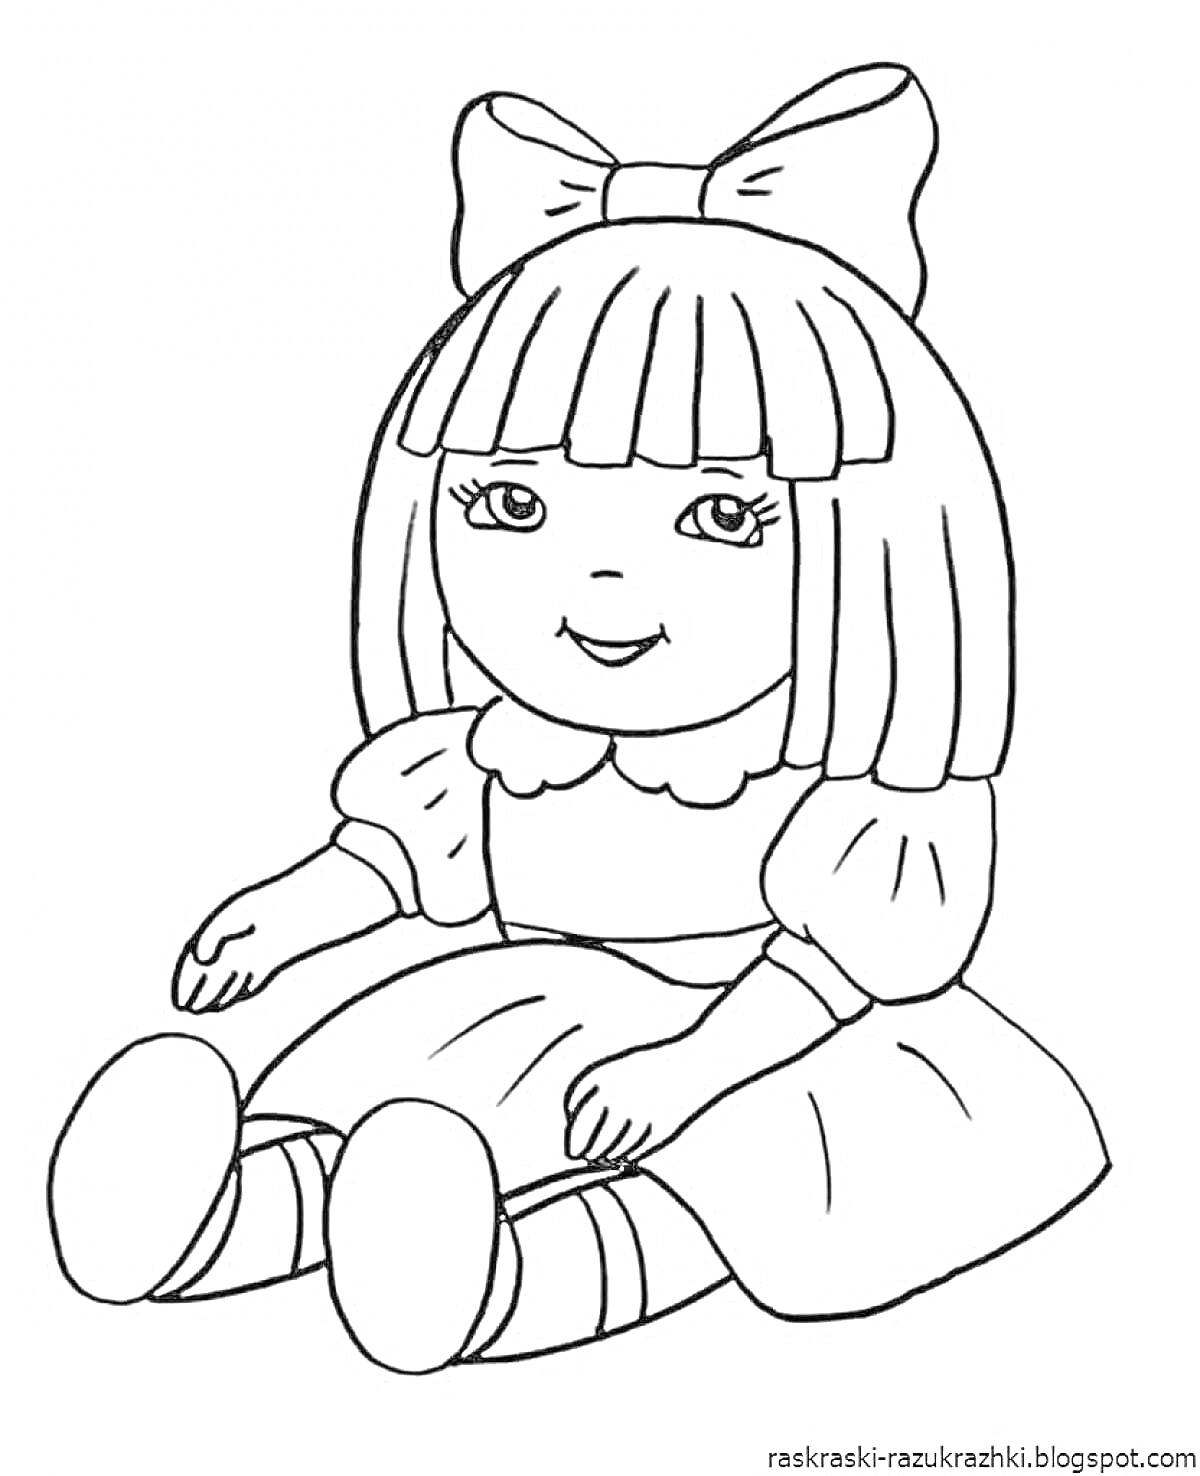 Раскраска Кукла с бантом на голове в платье с короткими рукавами